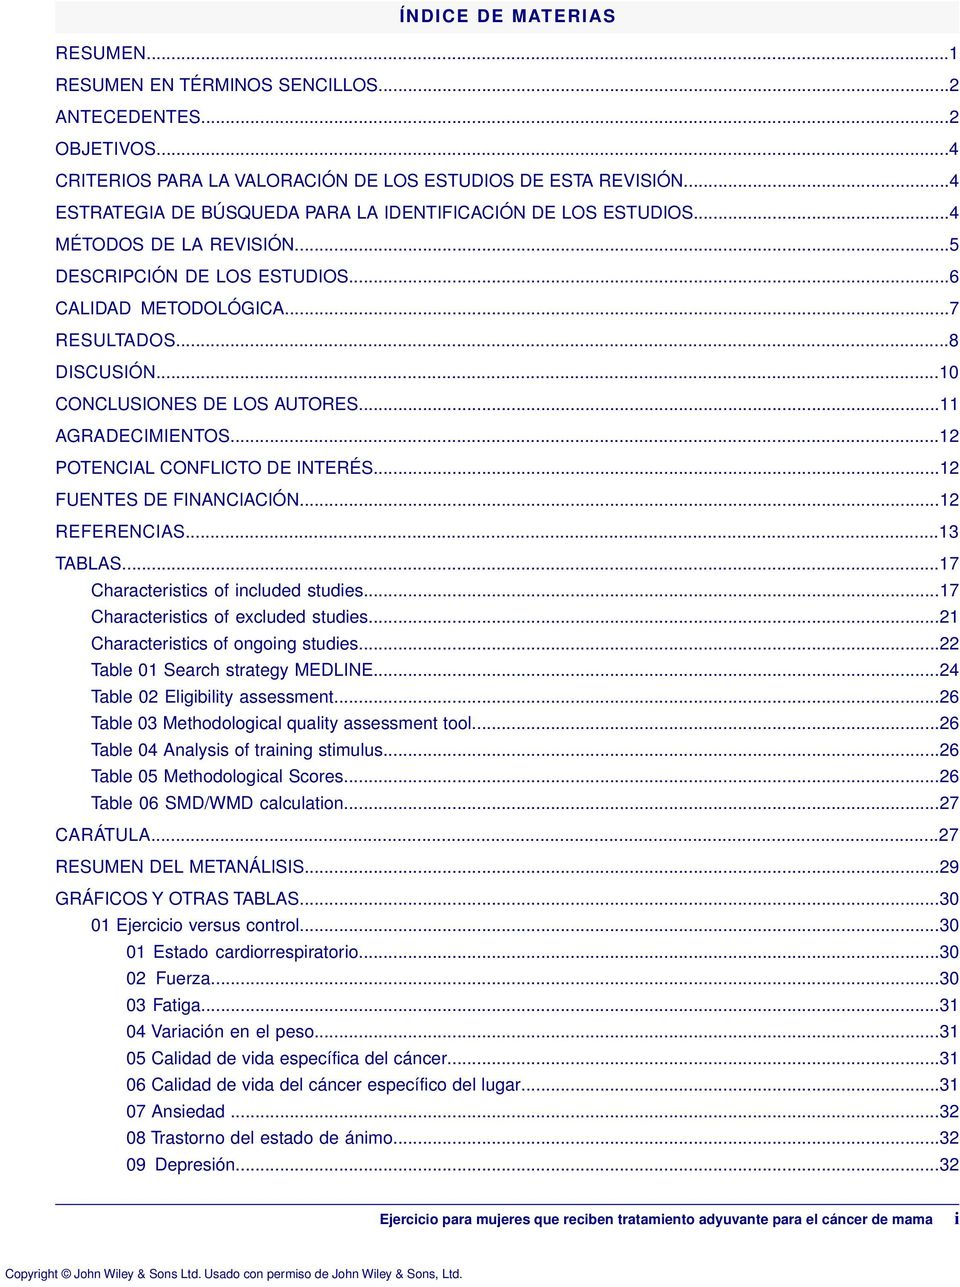 ..10 CONCLUSIONES DE LOS AUTORES...11 AGRADECIMIENTOS...12 POTENCIAL CONFLICTO DE INTERÉS...12 FUENTES DE FINANCIACIÓN...12 REFERENCIAS...13 TABLAS...17 Characteristics of included studies.